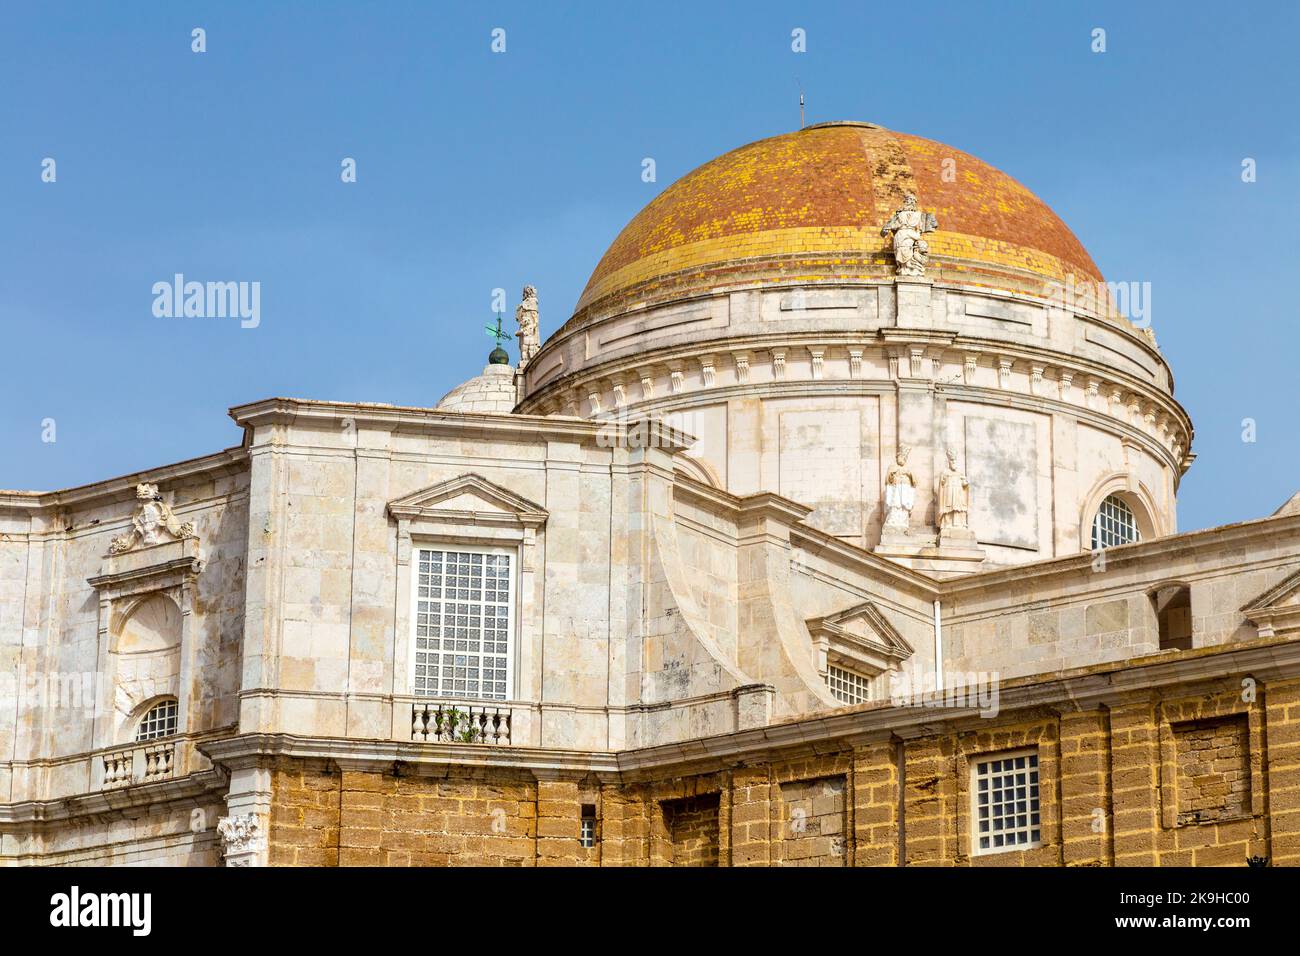 Dôme du style baroque et néoclassique de la cathédrale de Cadix (Catedral de Cádiz, Catedral de Santa Cruz de Cádiz), Cadix, Andalousie, Espagne Banque D'Images